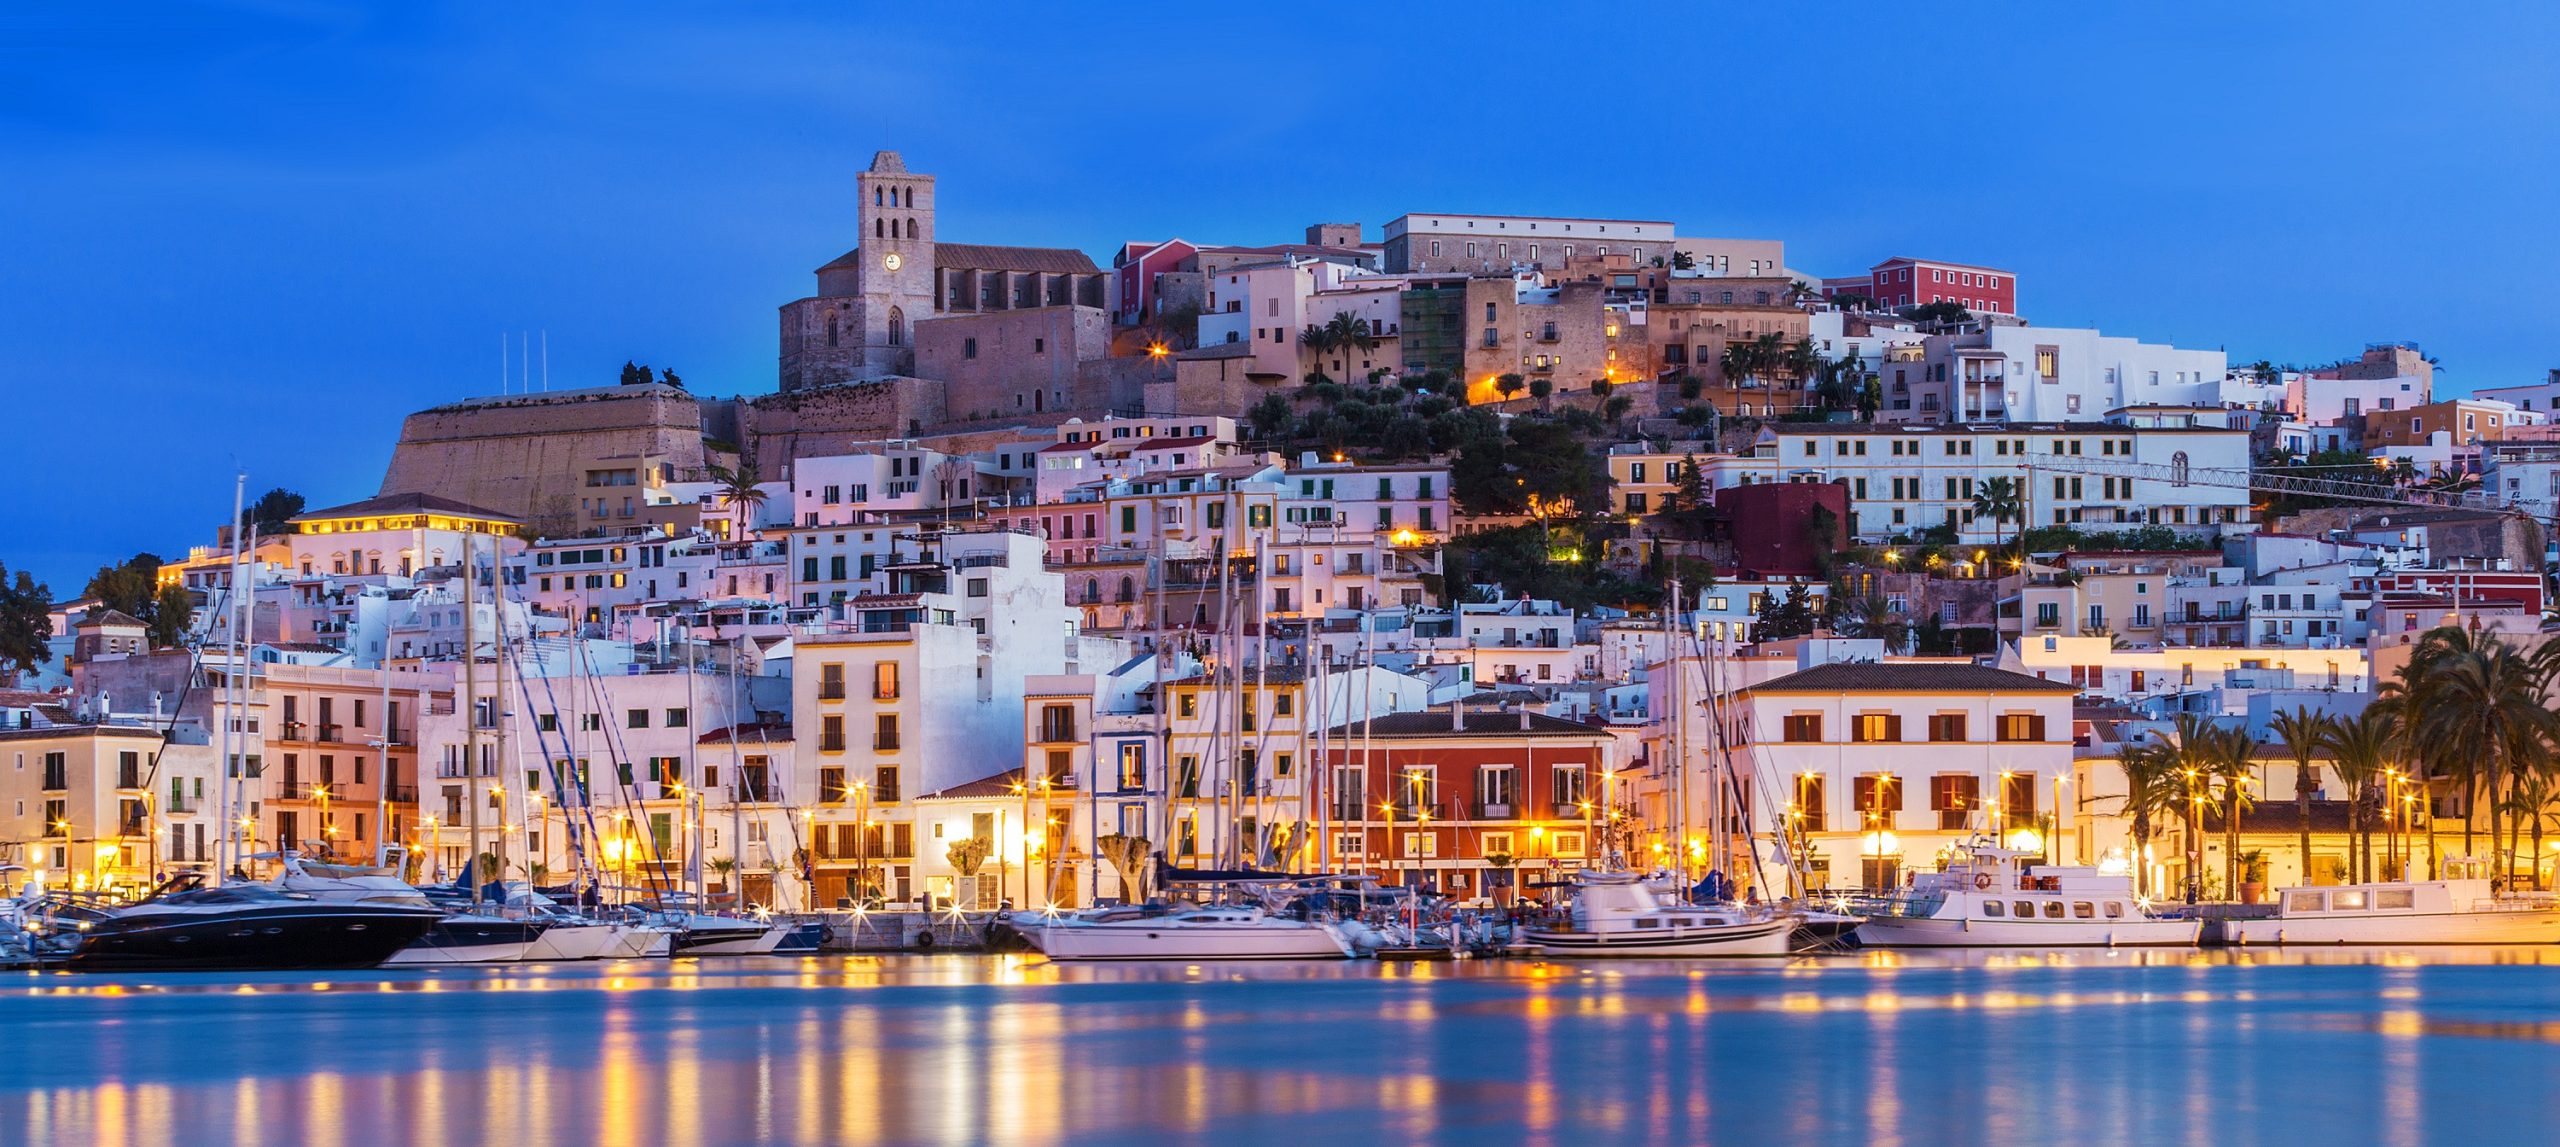 Ten of the best luxury villas to rent in Ibiza